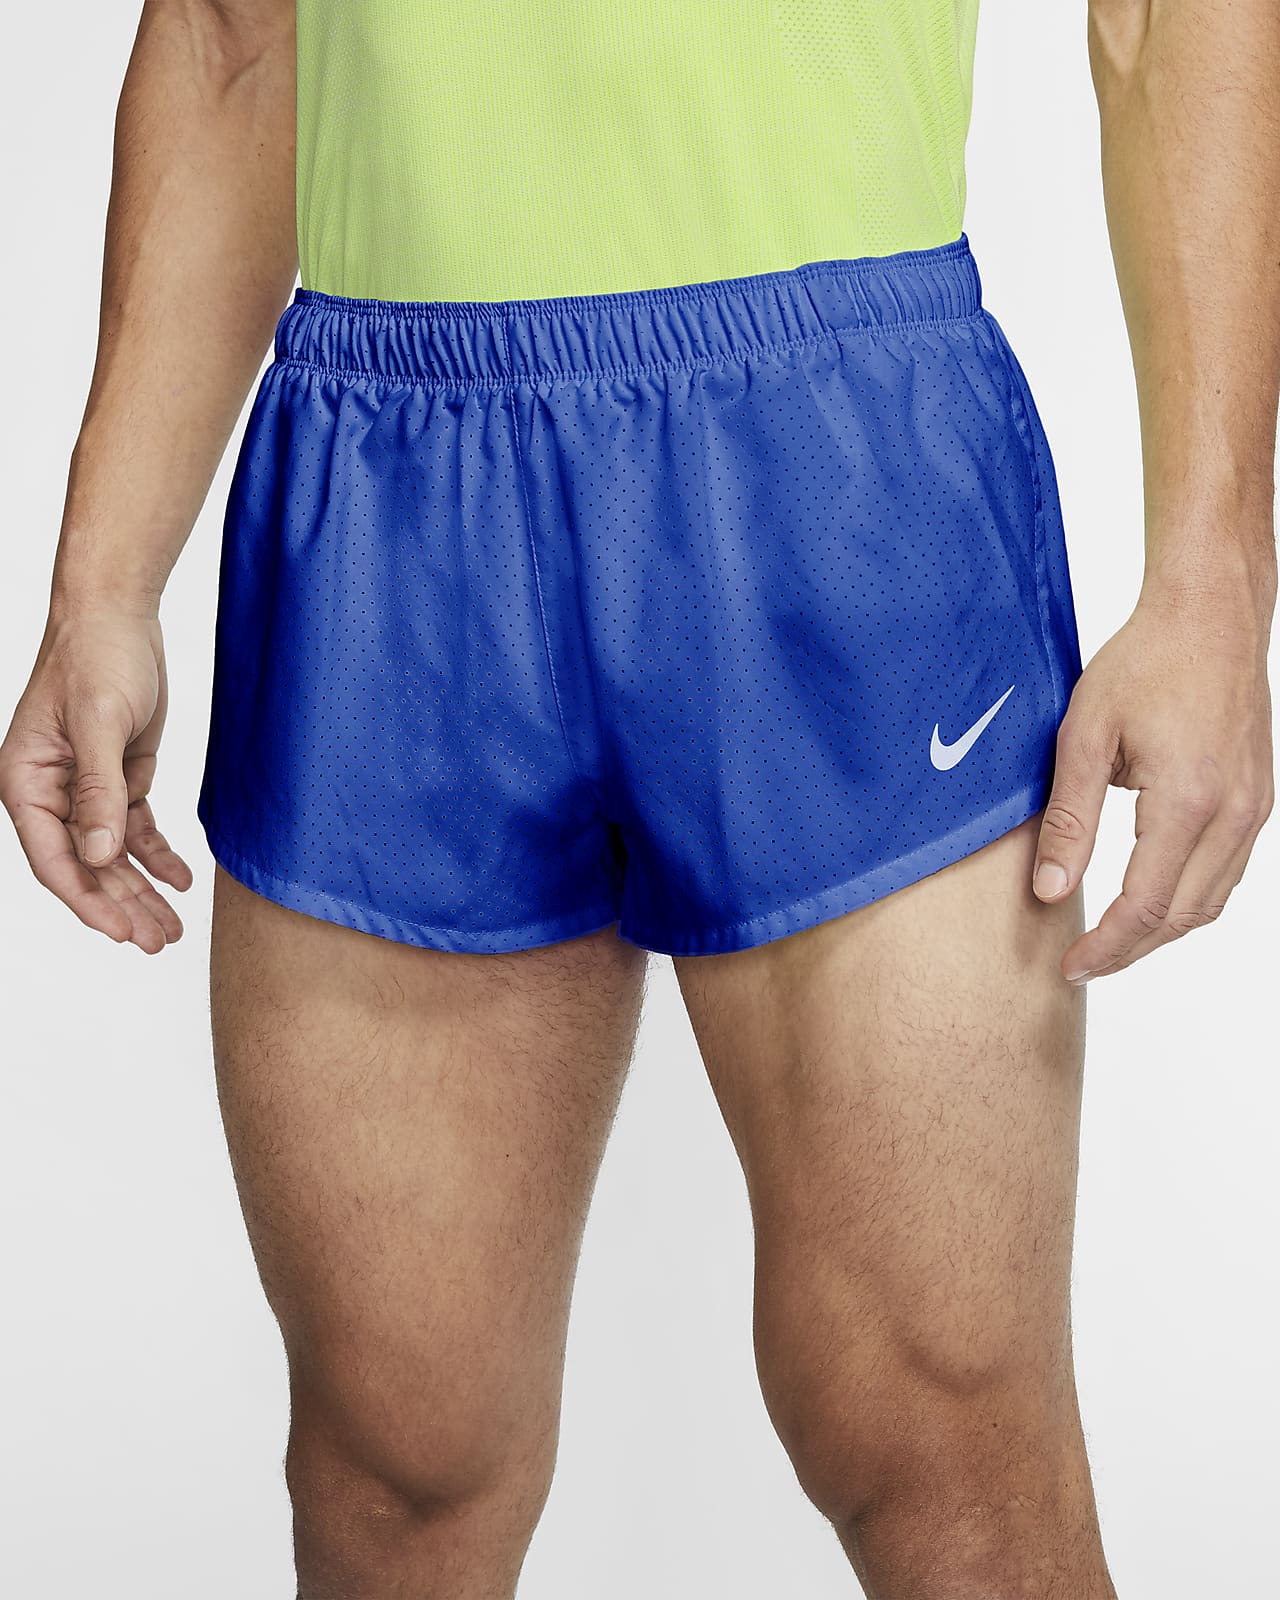 mens running short shorts